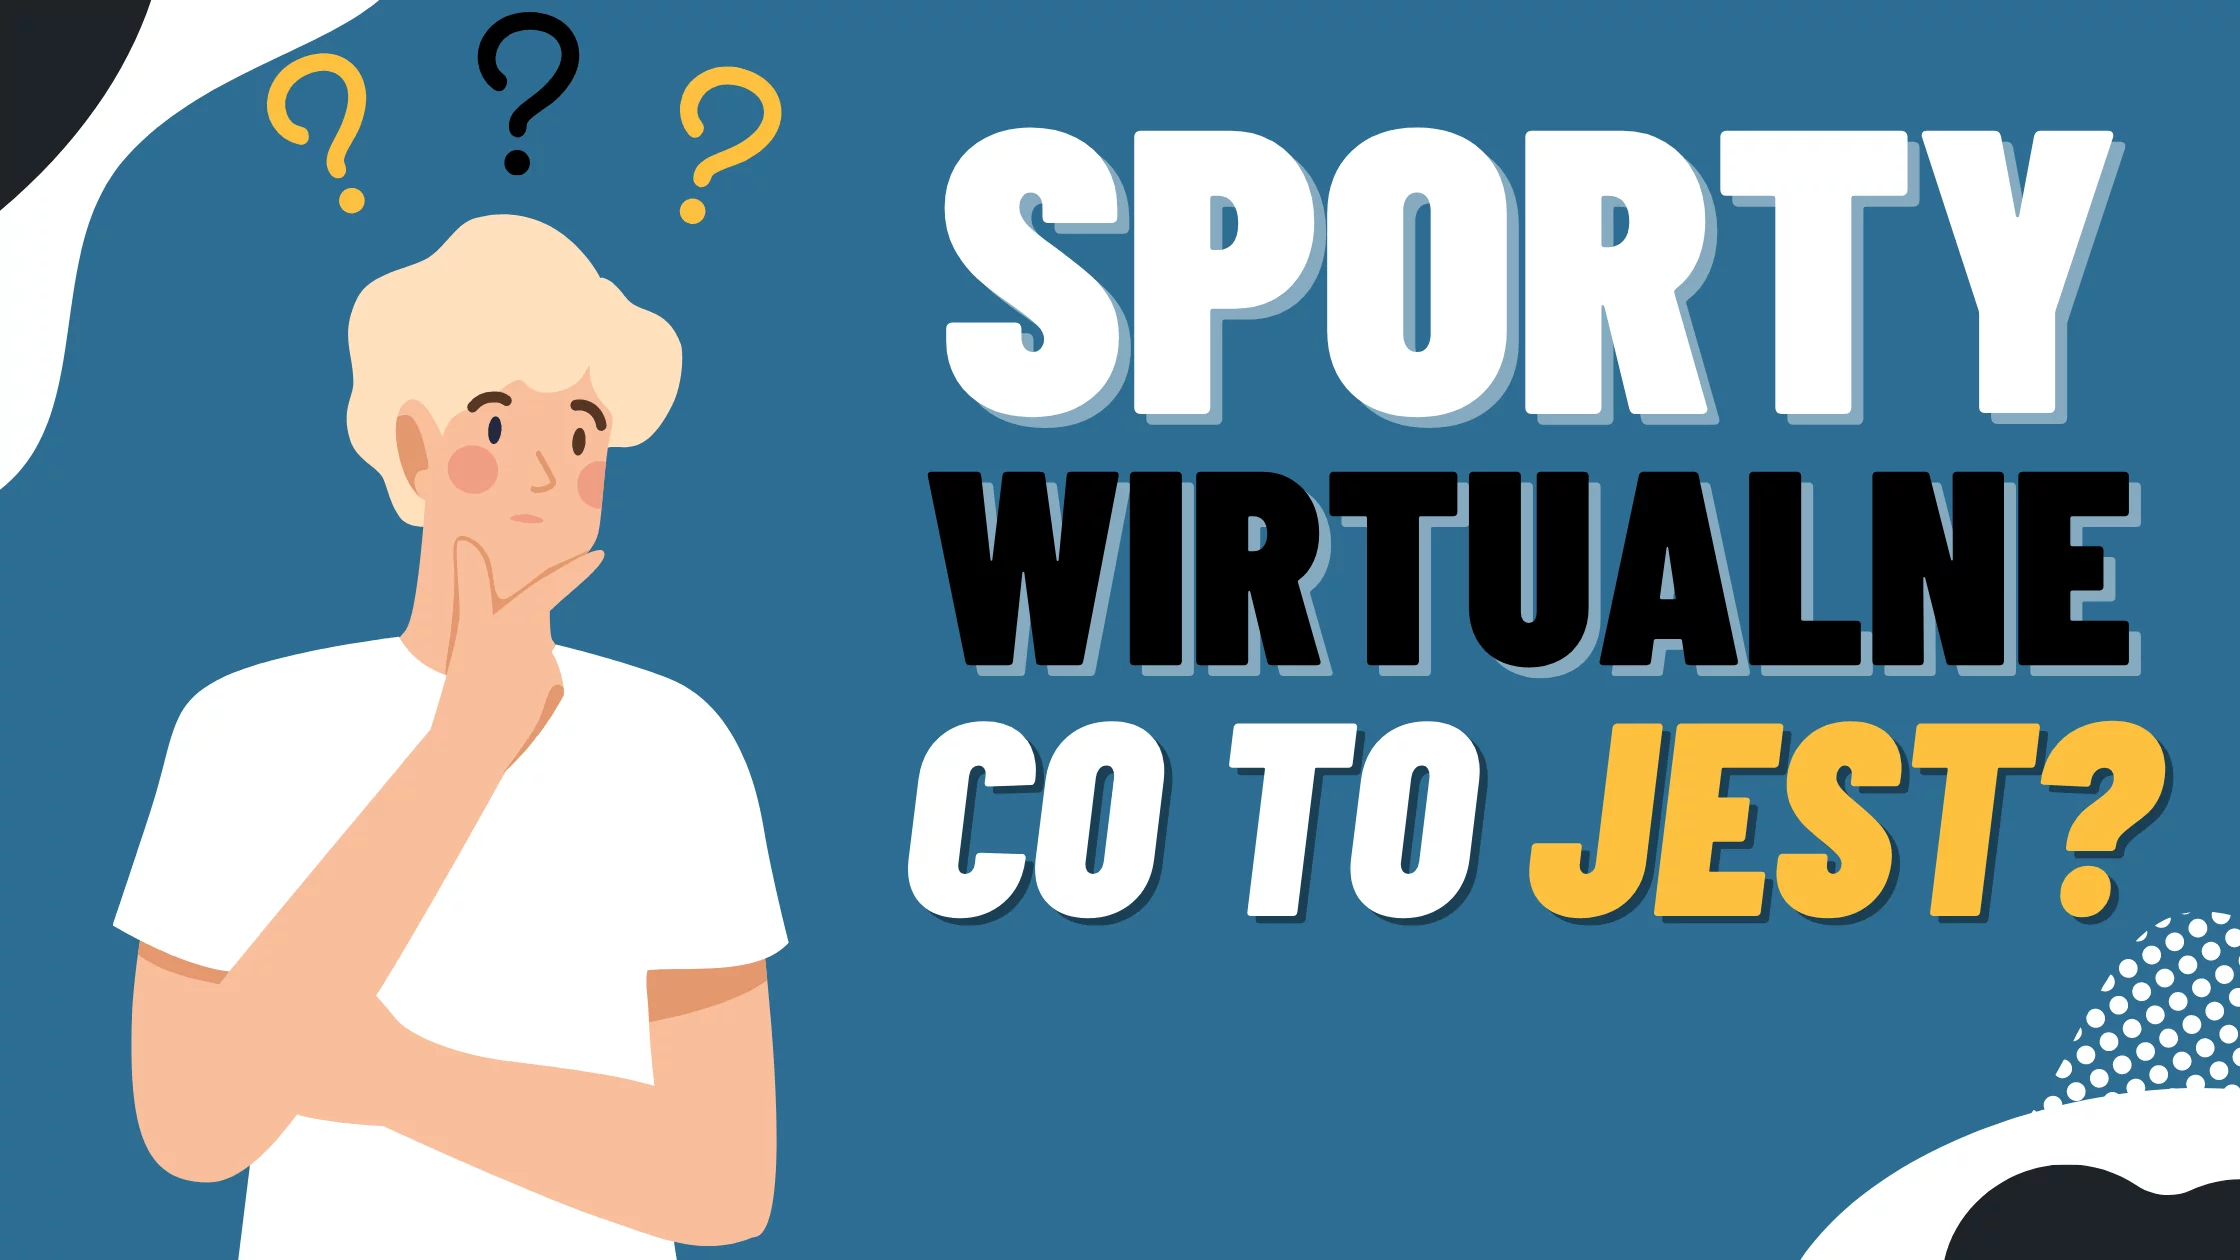 Co to jest sporty wirtualne?